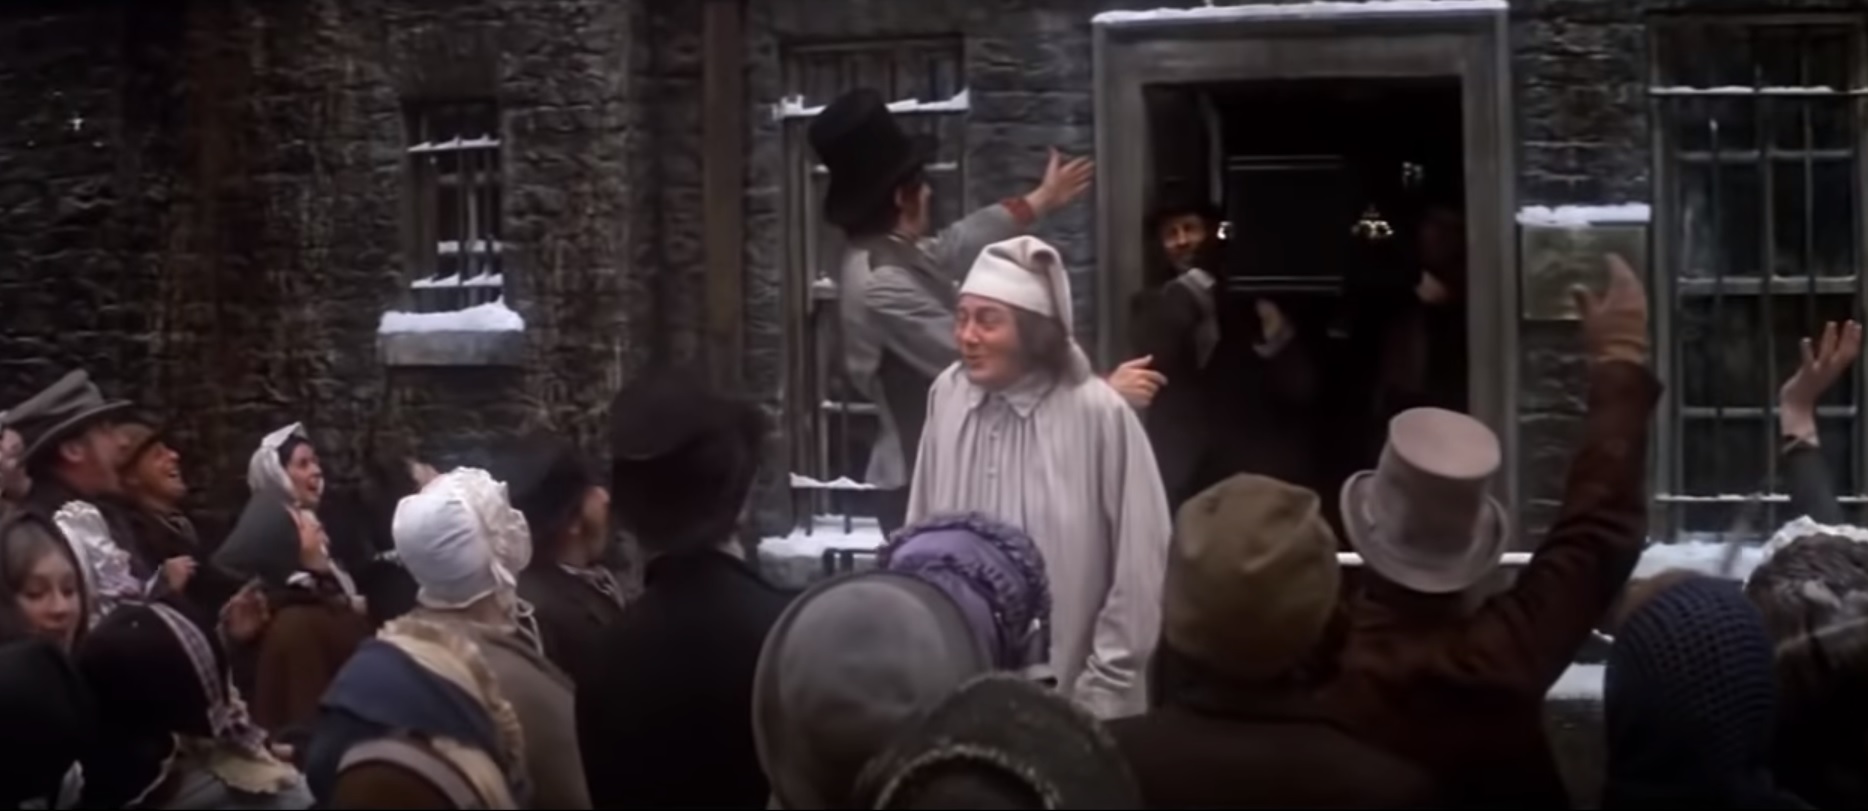 Albert Finney in Scrooge (1970)